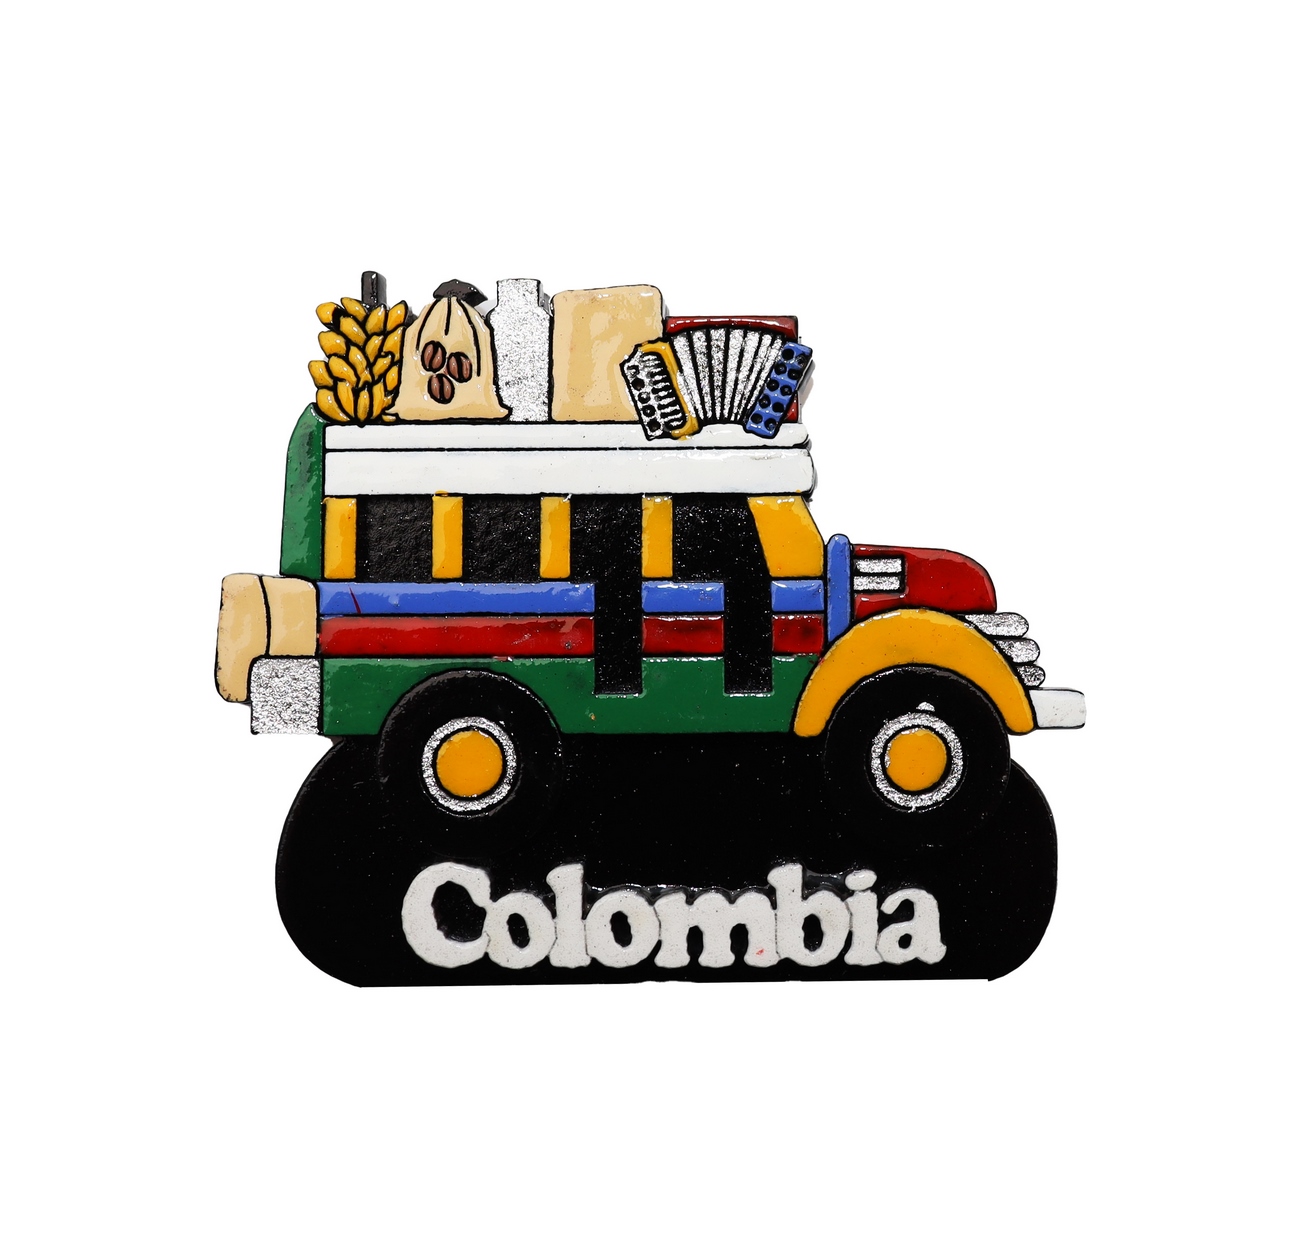 Iman Decorativo Chiva Colombia Para La Nevera Artesania